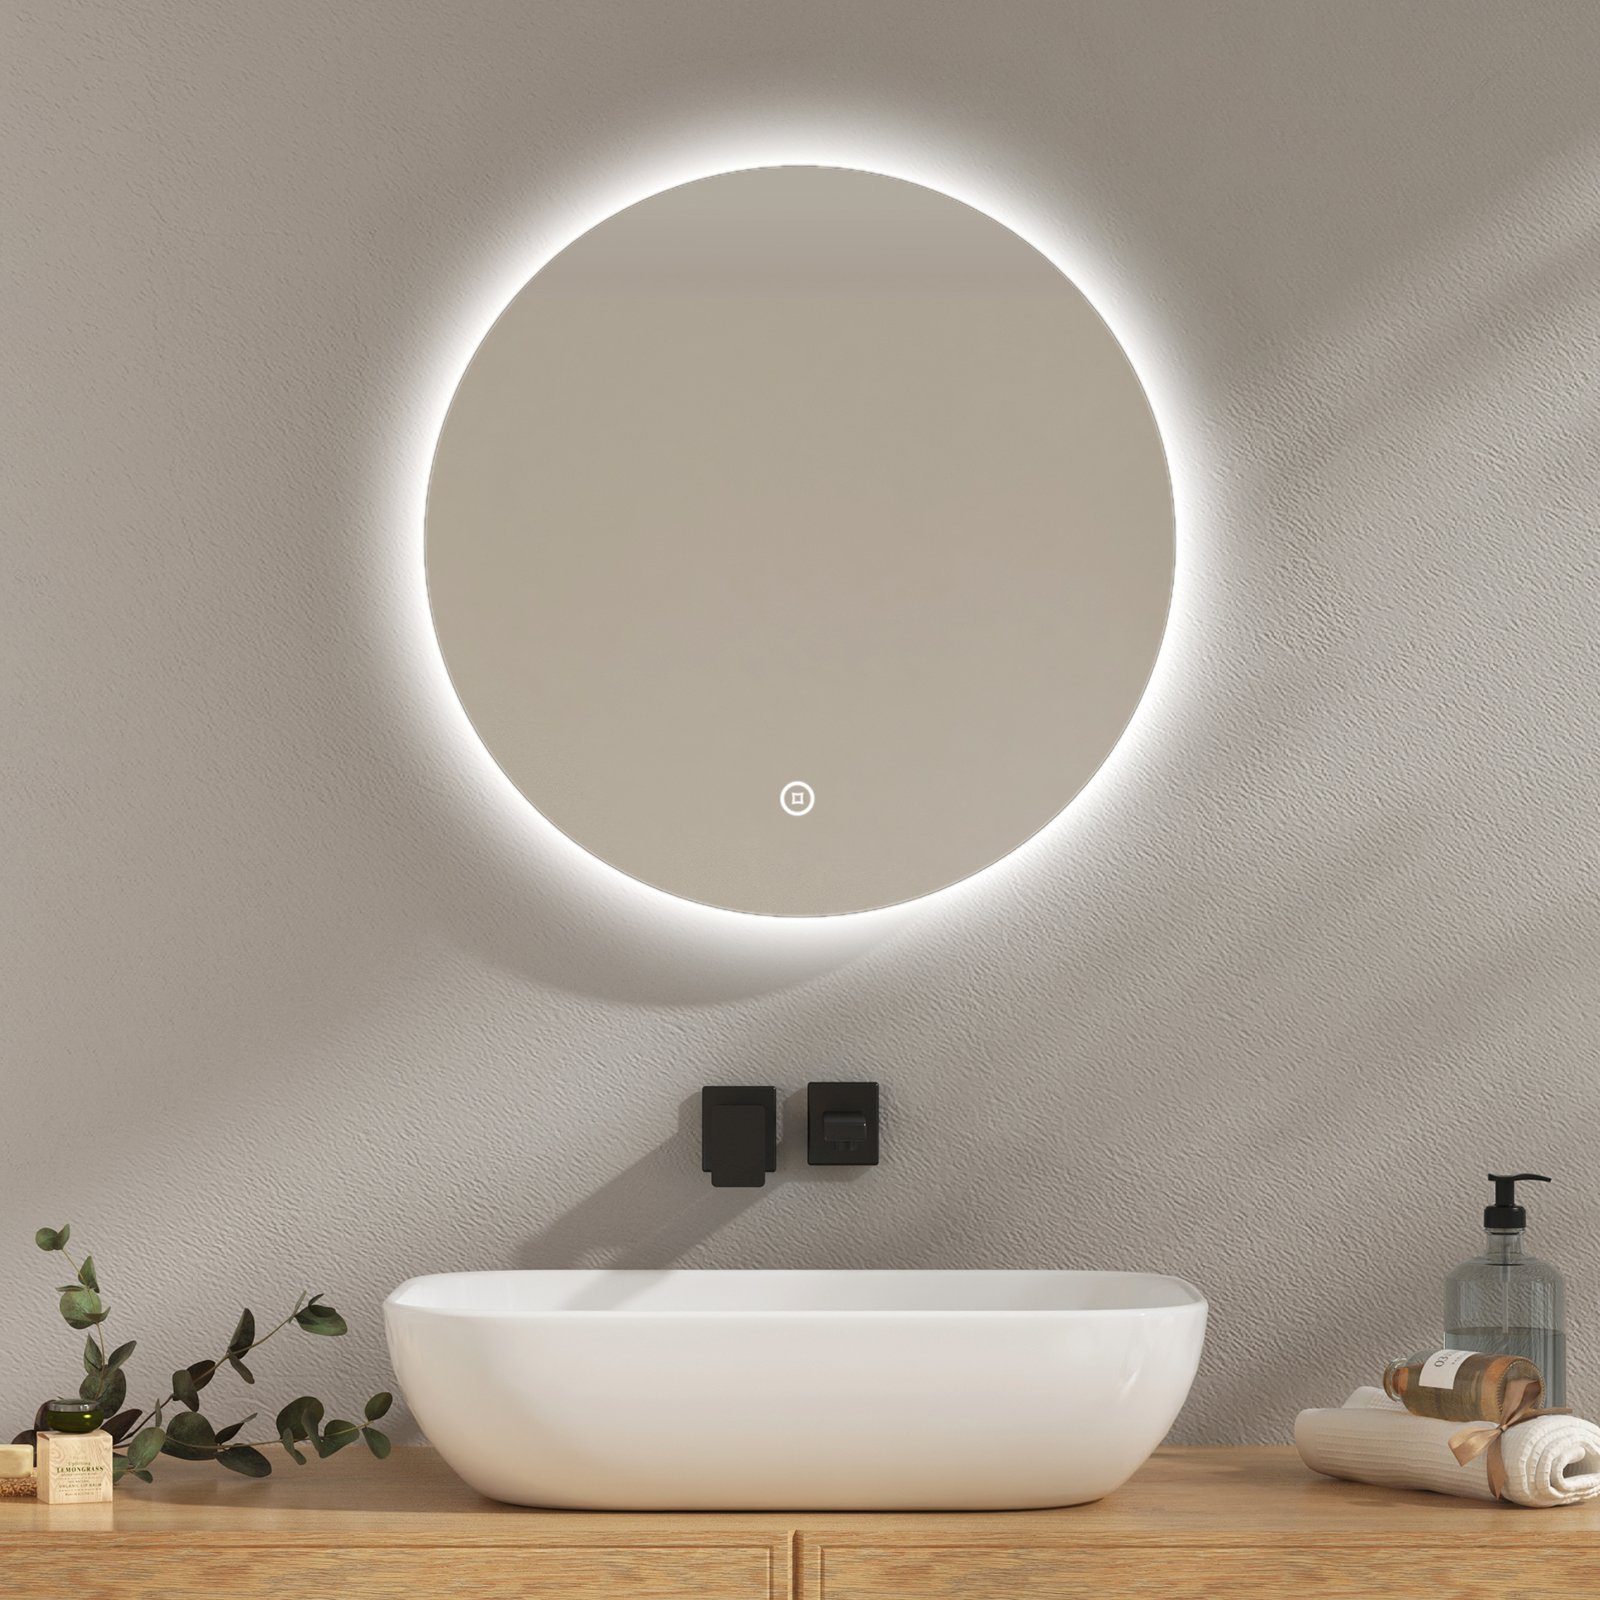 EMKE Badspiegel EMKE Runder Badspigel Spiegel mit Beleuchtung, Rahmenloser Spiegel mit Touchschalter